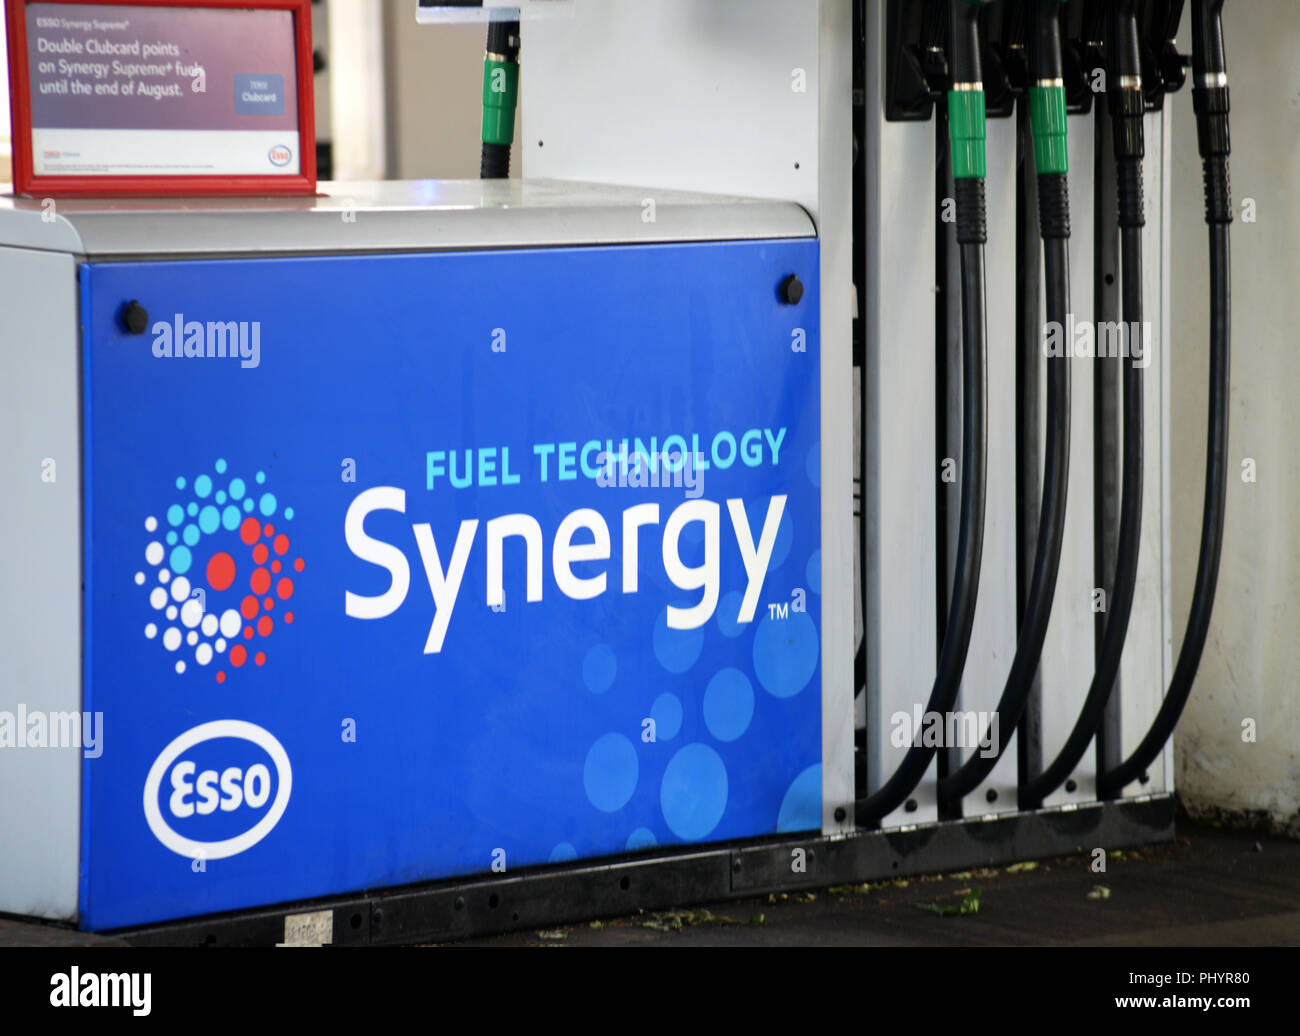 Zone de service au Royaume-Uni Les pompes à essence Esso avec 4 choix de combustible. Banque D'Images